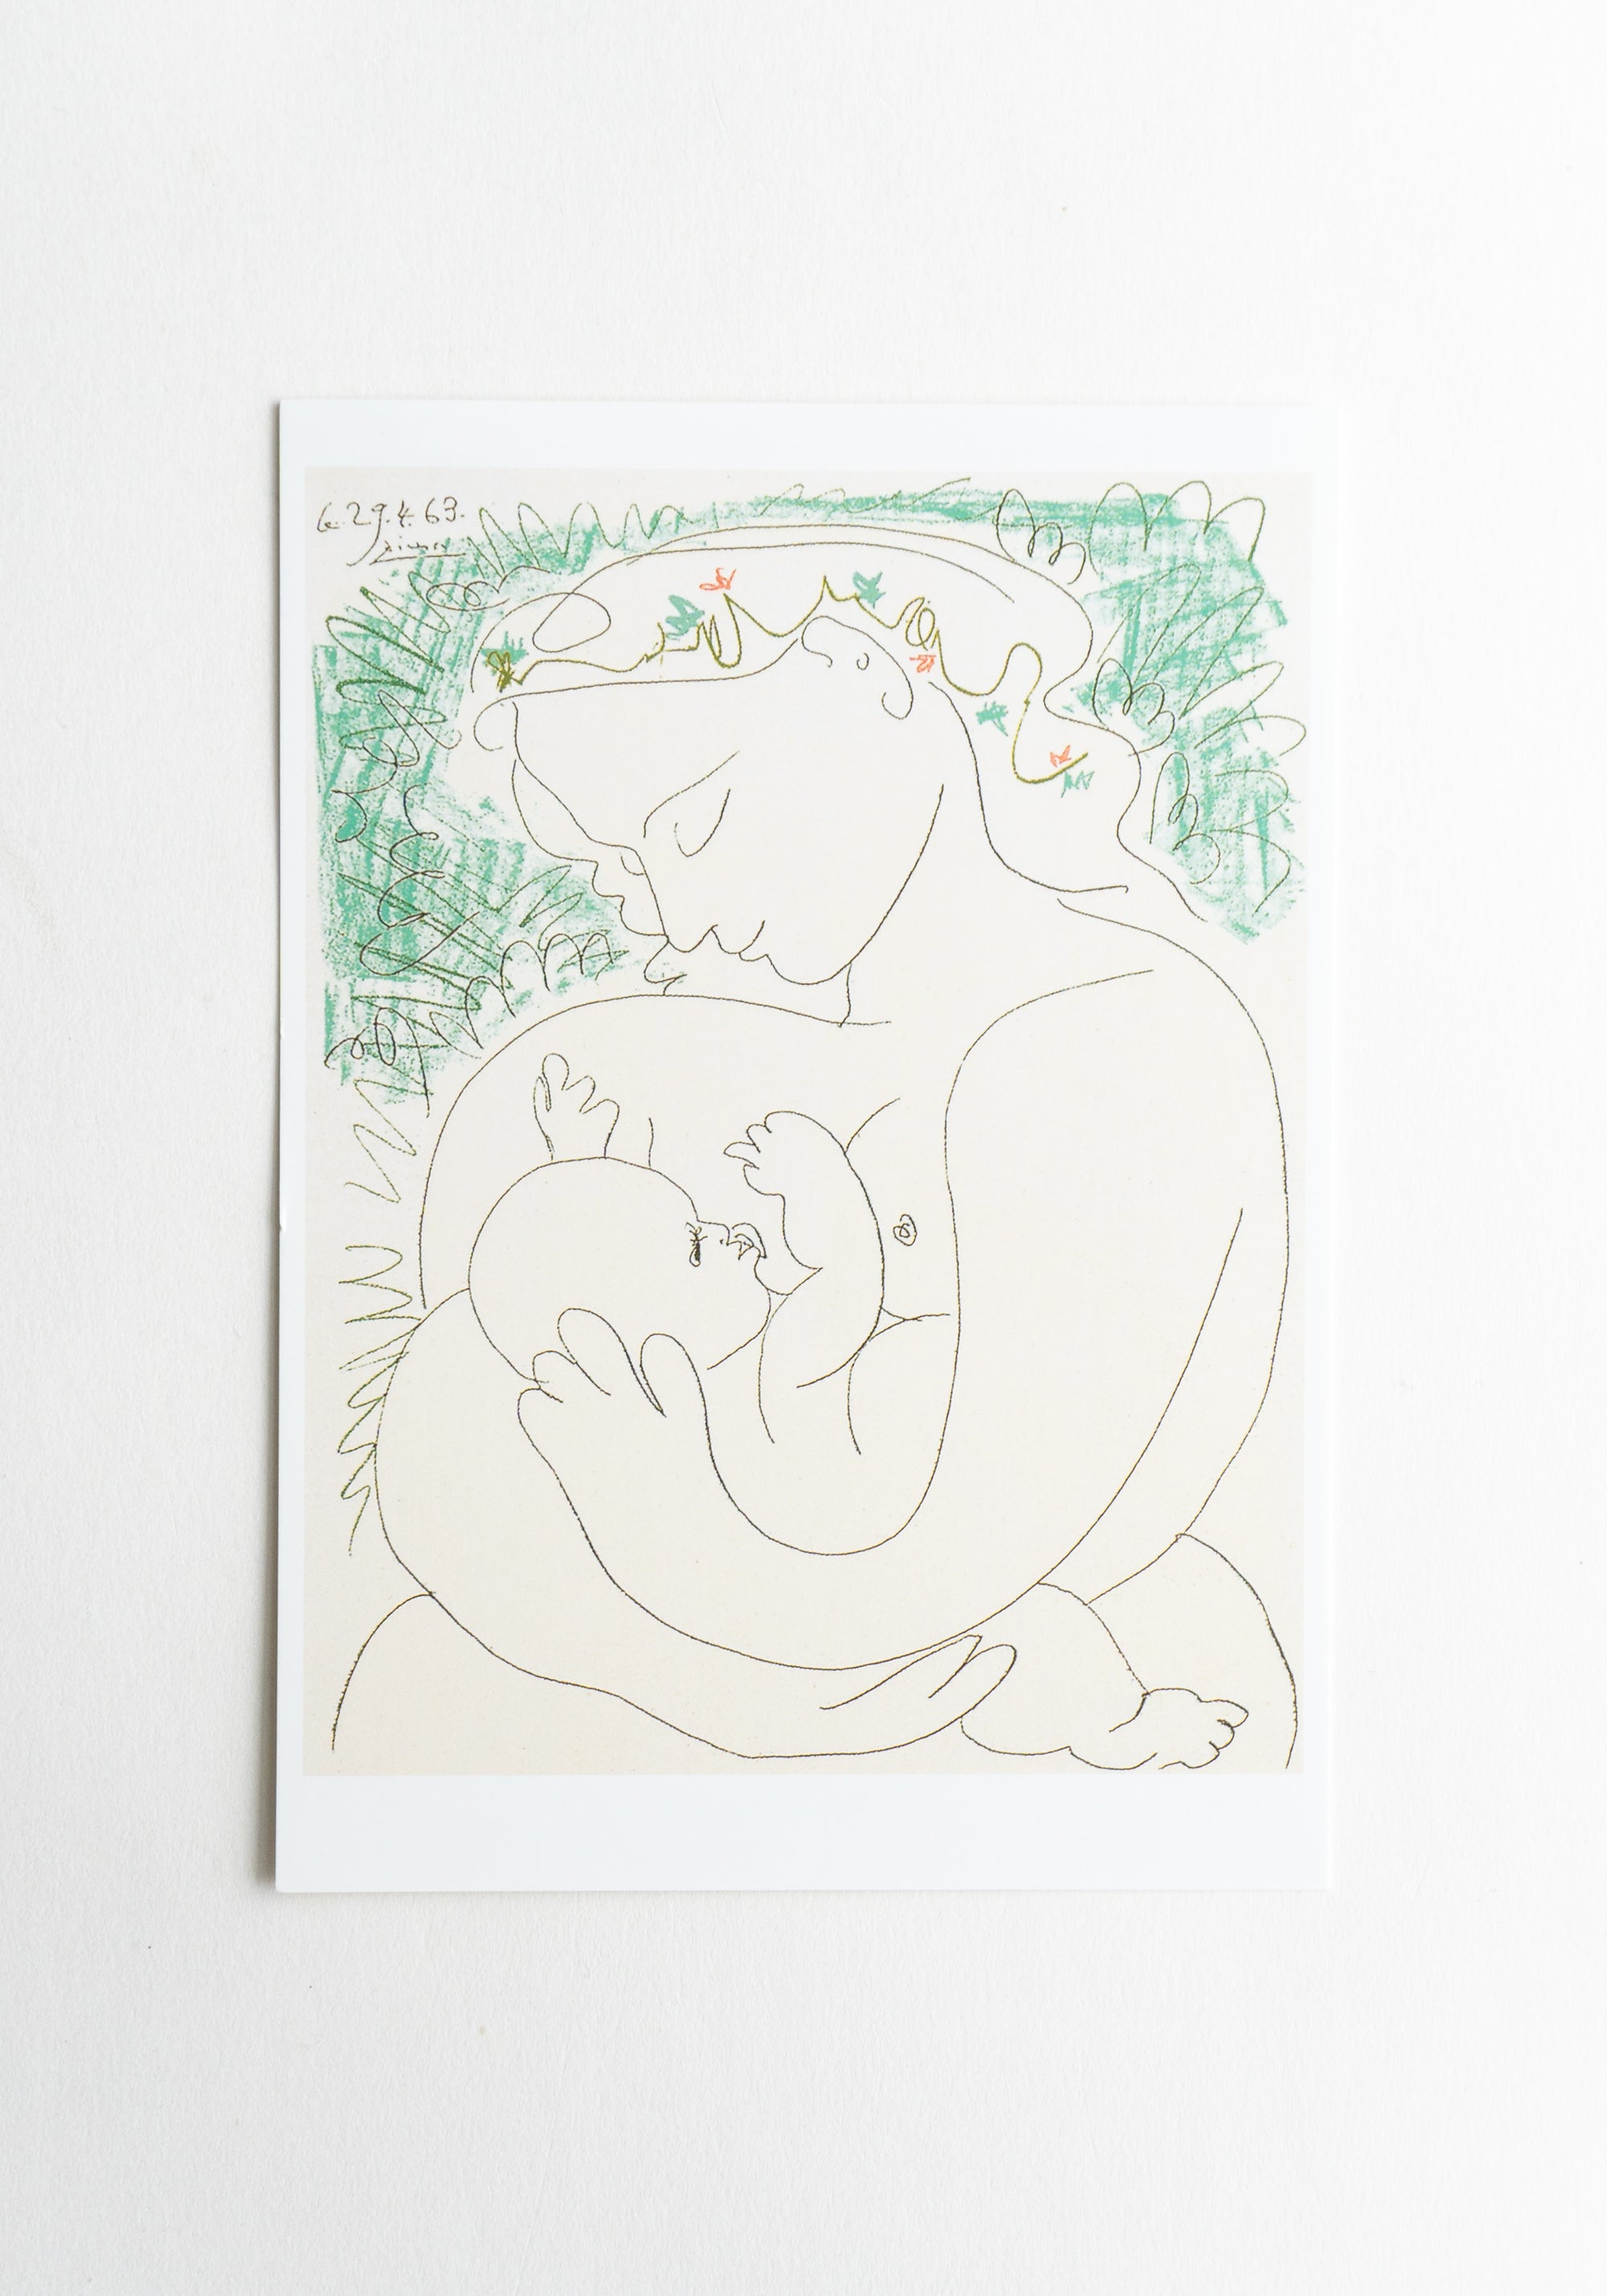 Maternite Postcard by Pablo Picasso